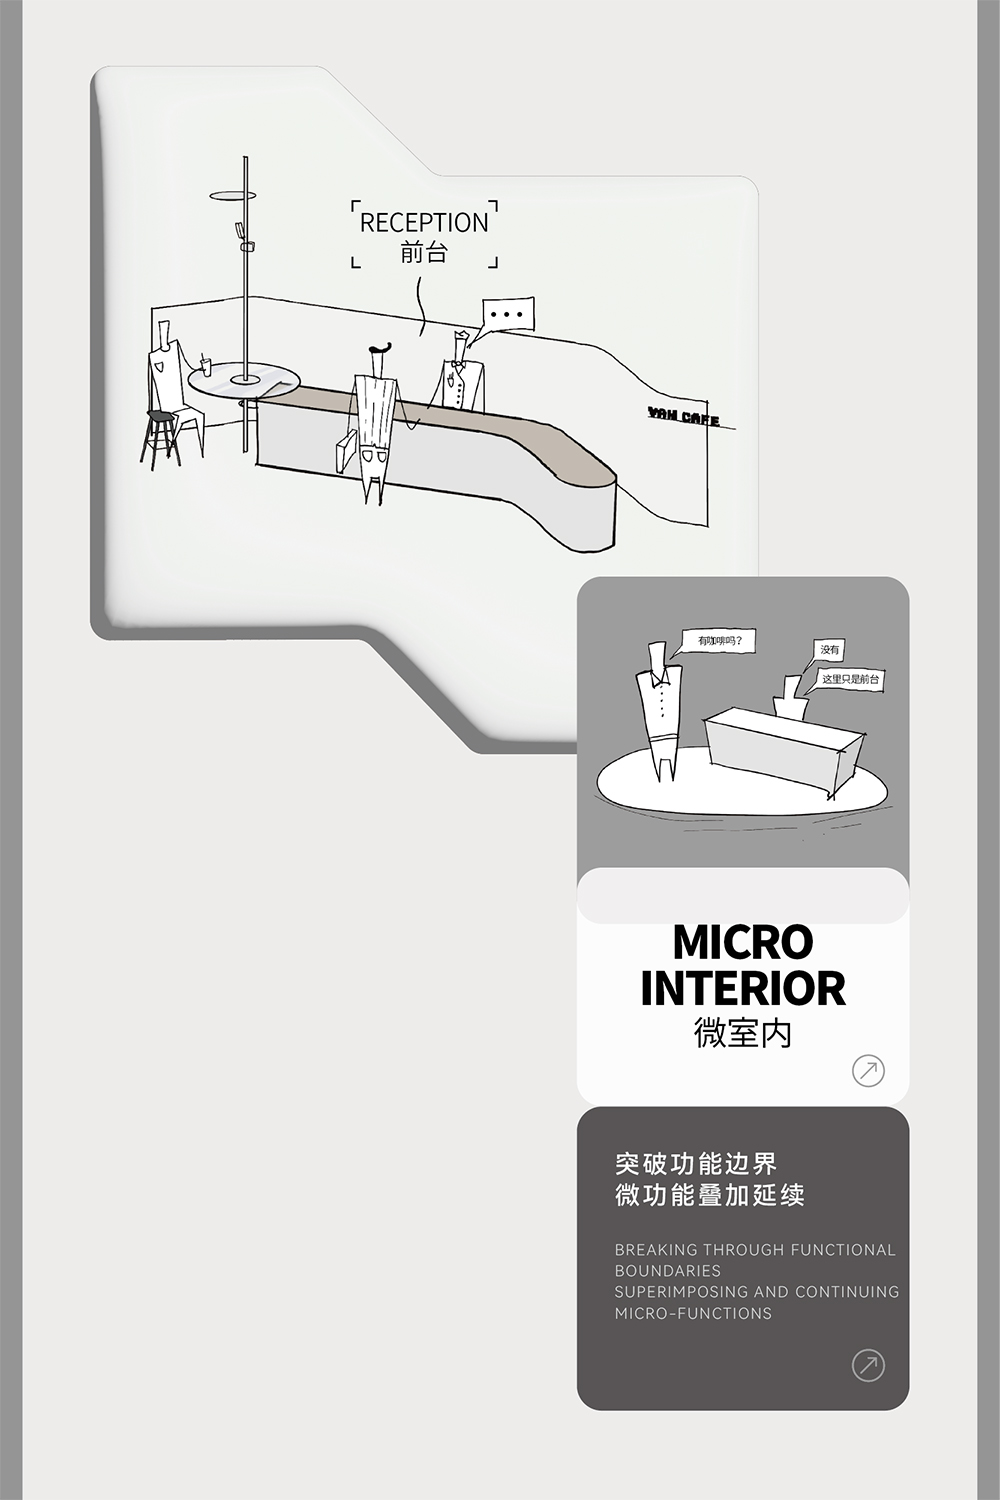 接待大堂設計,辦公樓接待大堂設計,電梯間設計,公共空間設計,辦公樓衛生間設計,杭州黃龍國際中心四期「微交互」擬態未來辦公方式,杭州,TOMO東木築造